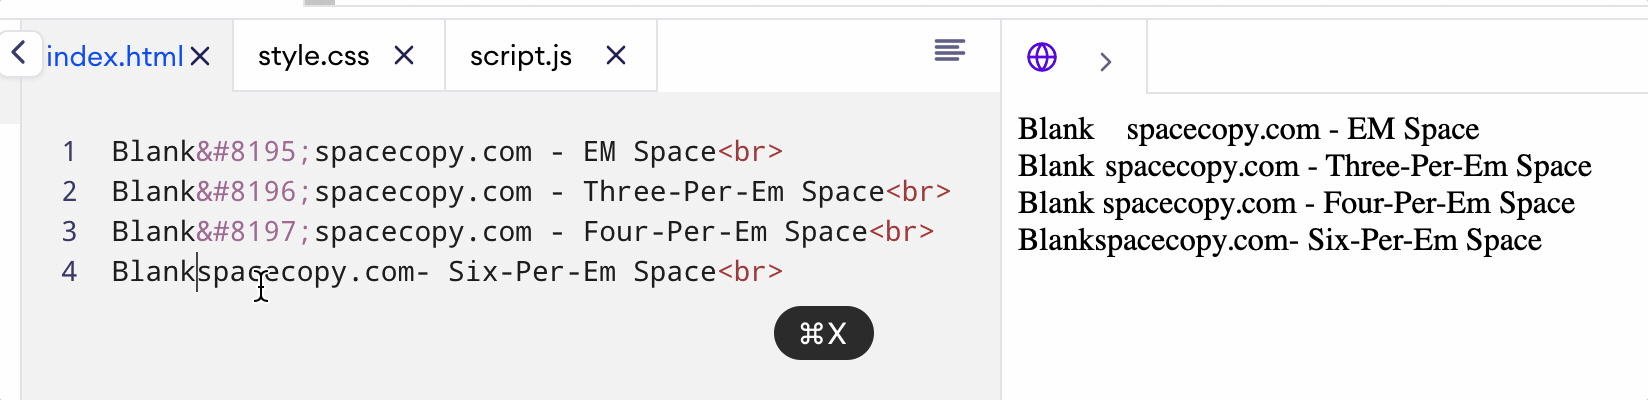 Six-Per-Em Space